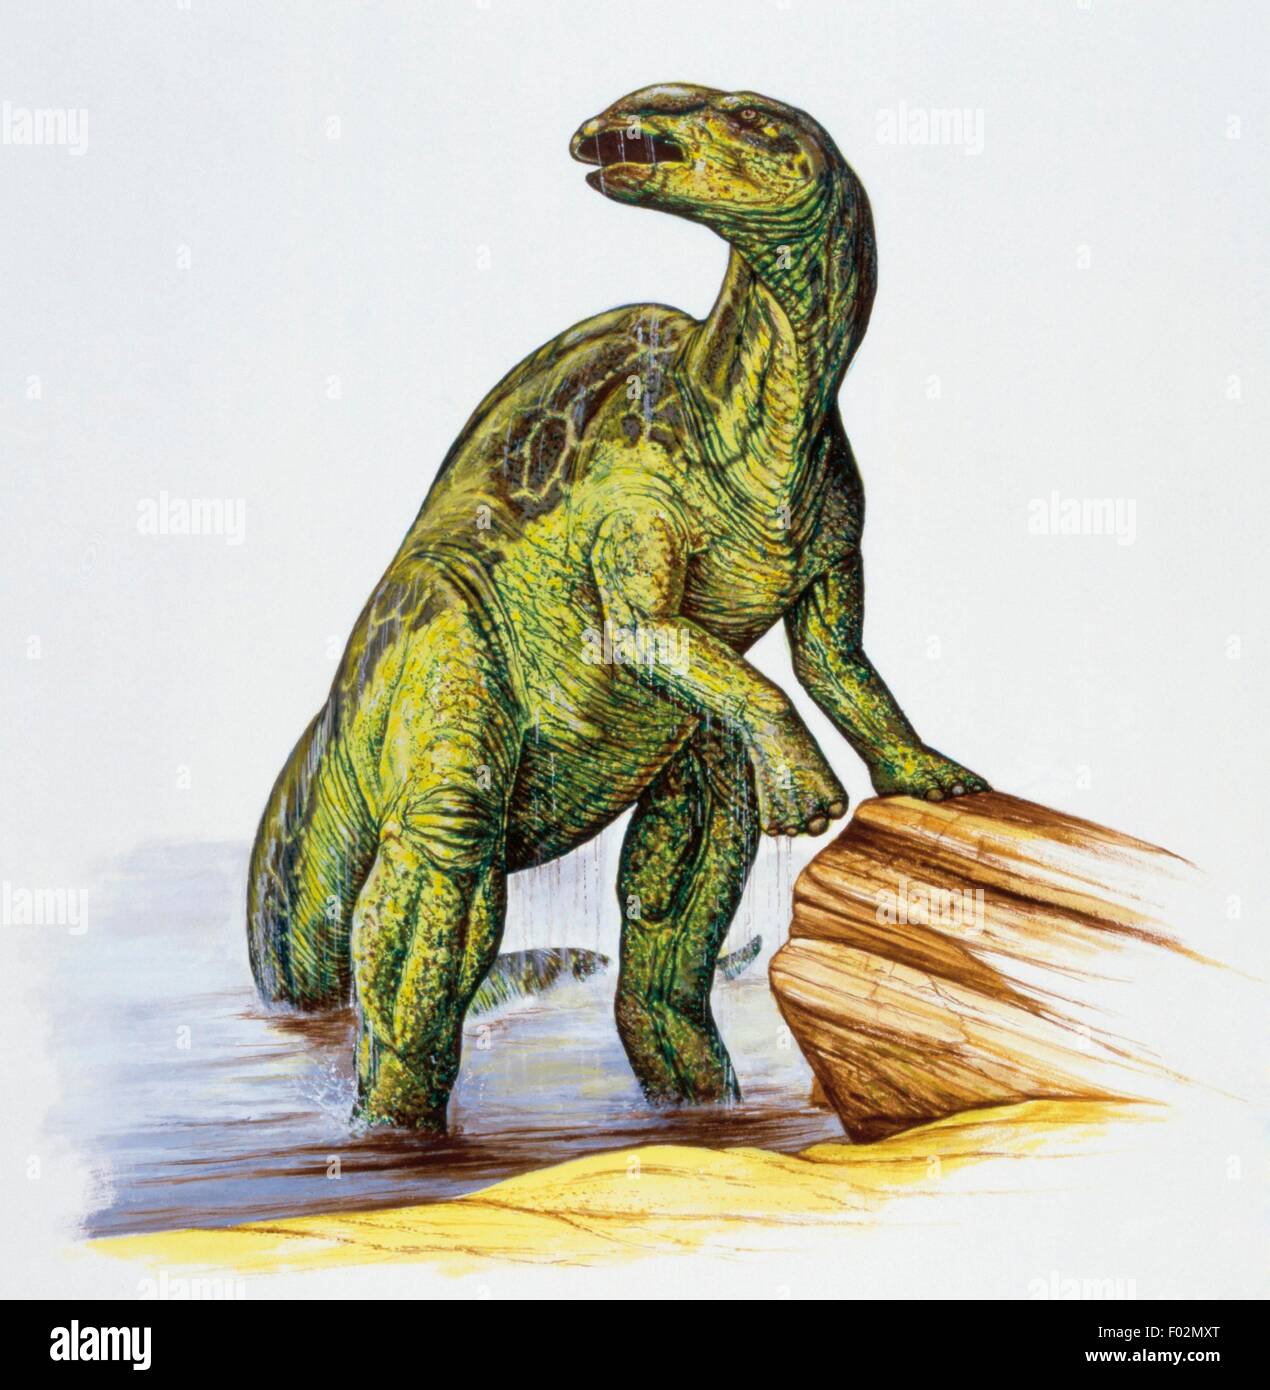 Anatotitan copei, Hadrosauridae, Late Cretaceous. Artwork by Neil Lloyd. Stock Photo